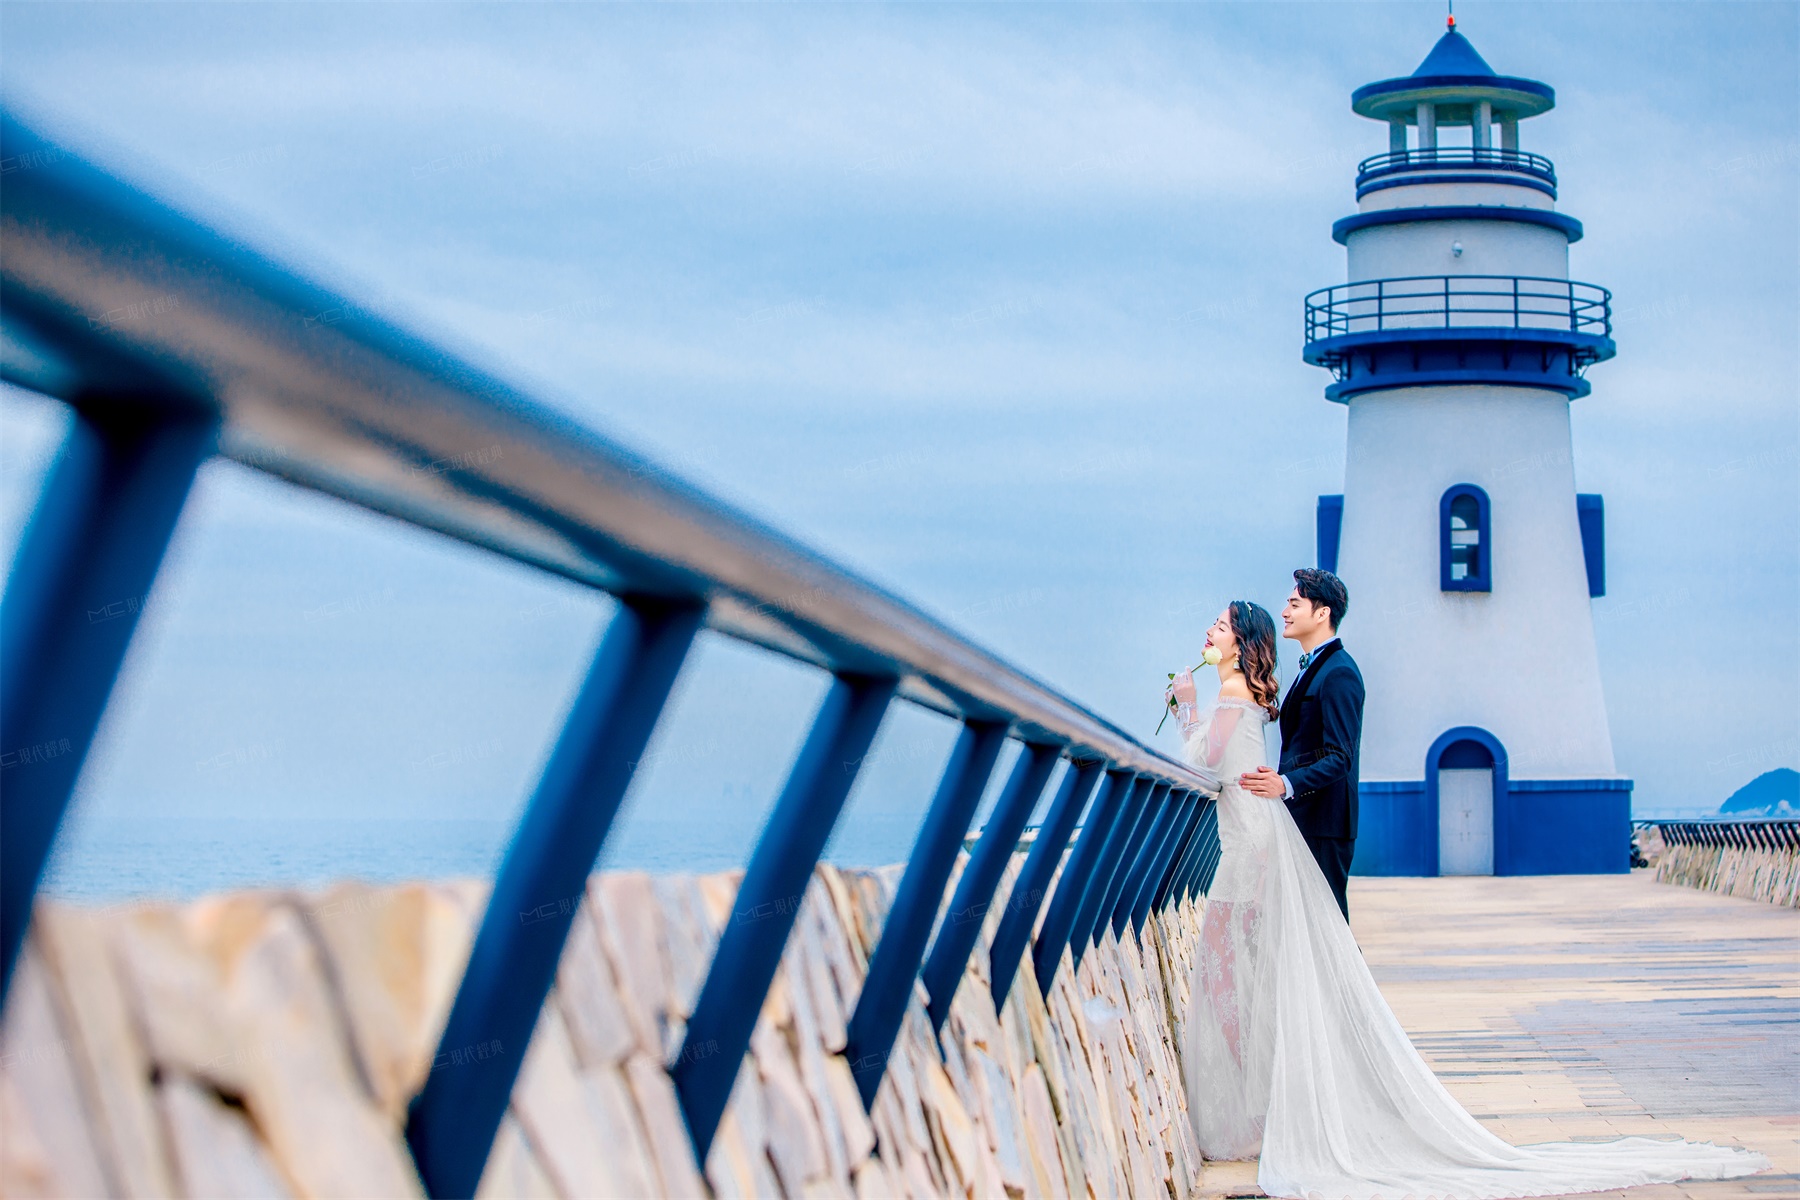 一价通拍丨珠海城市婚纱照丨城市地标丨浪漫海景